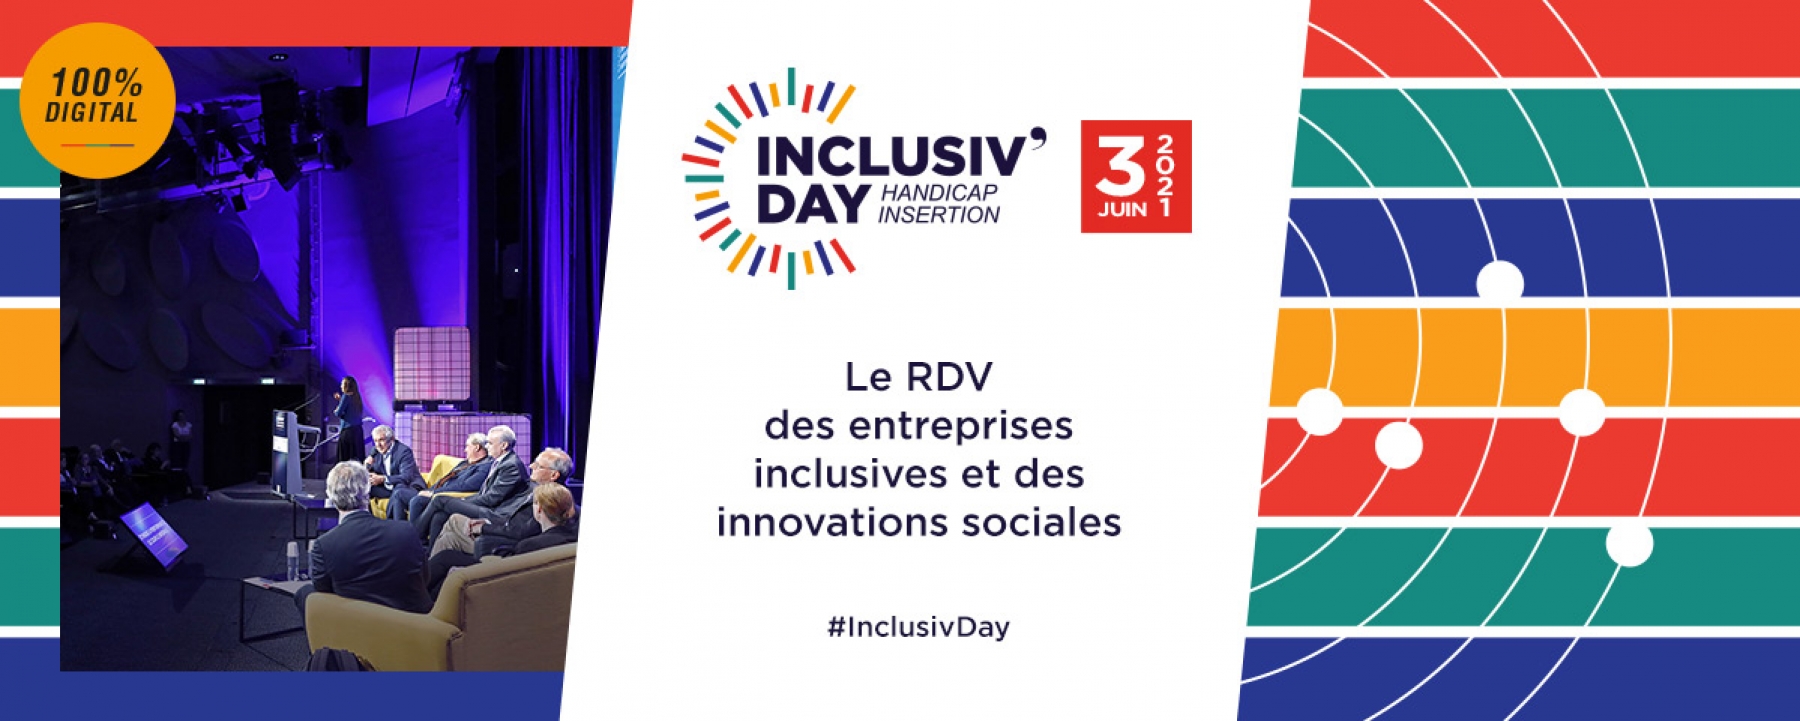 Evénement Inclusiv'Day, organisé par Les Echos-Le Parisien